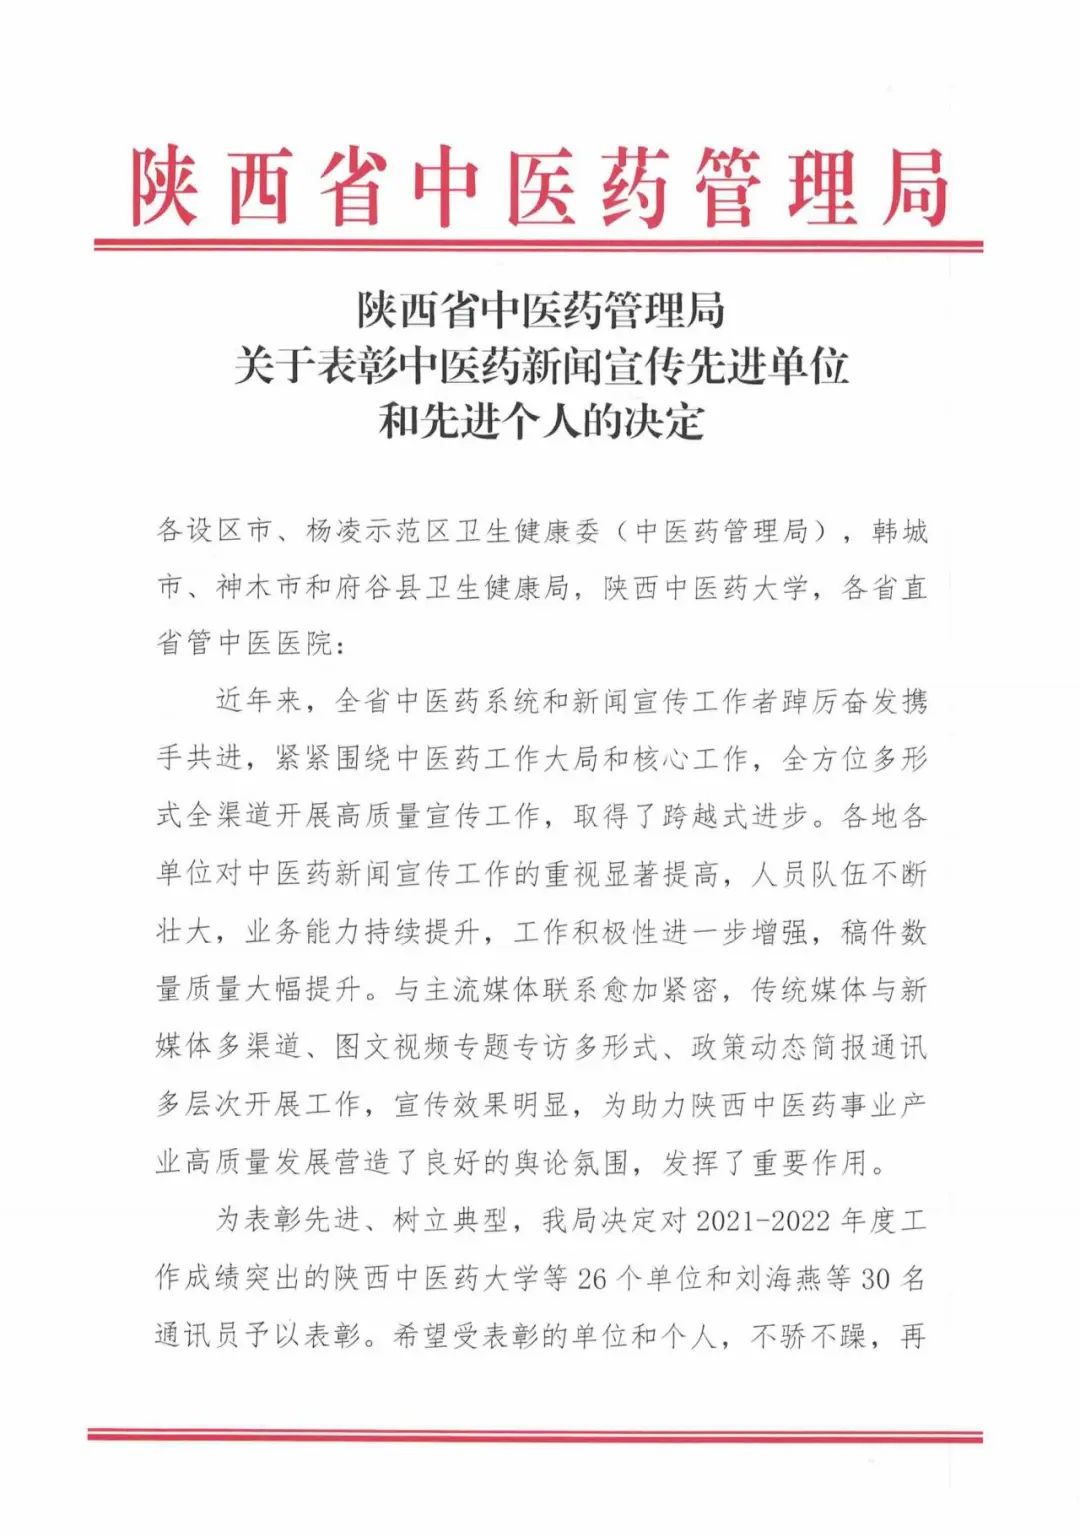 北京大学第三医院延安分院（延安市中医医院）荣获全省中医药新闻宣传先进单位